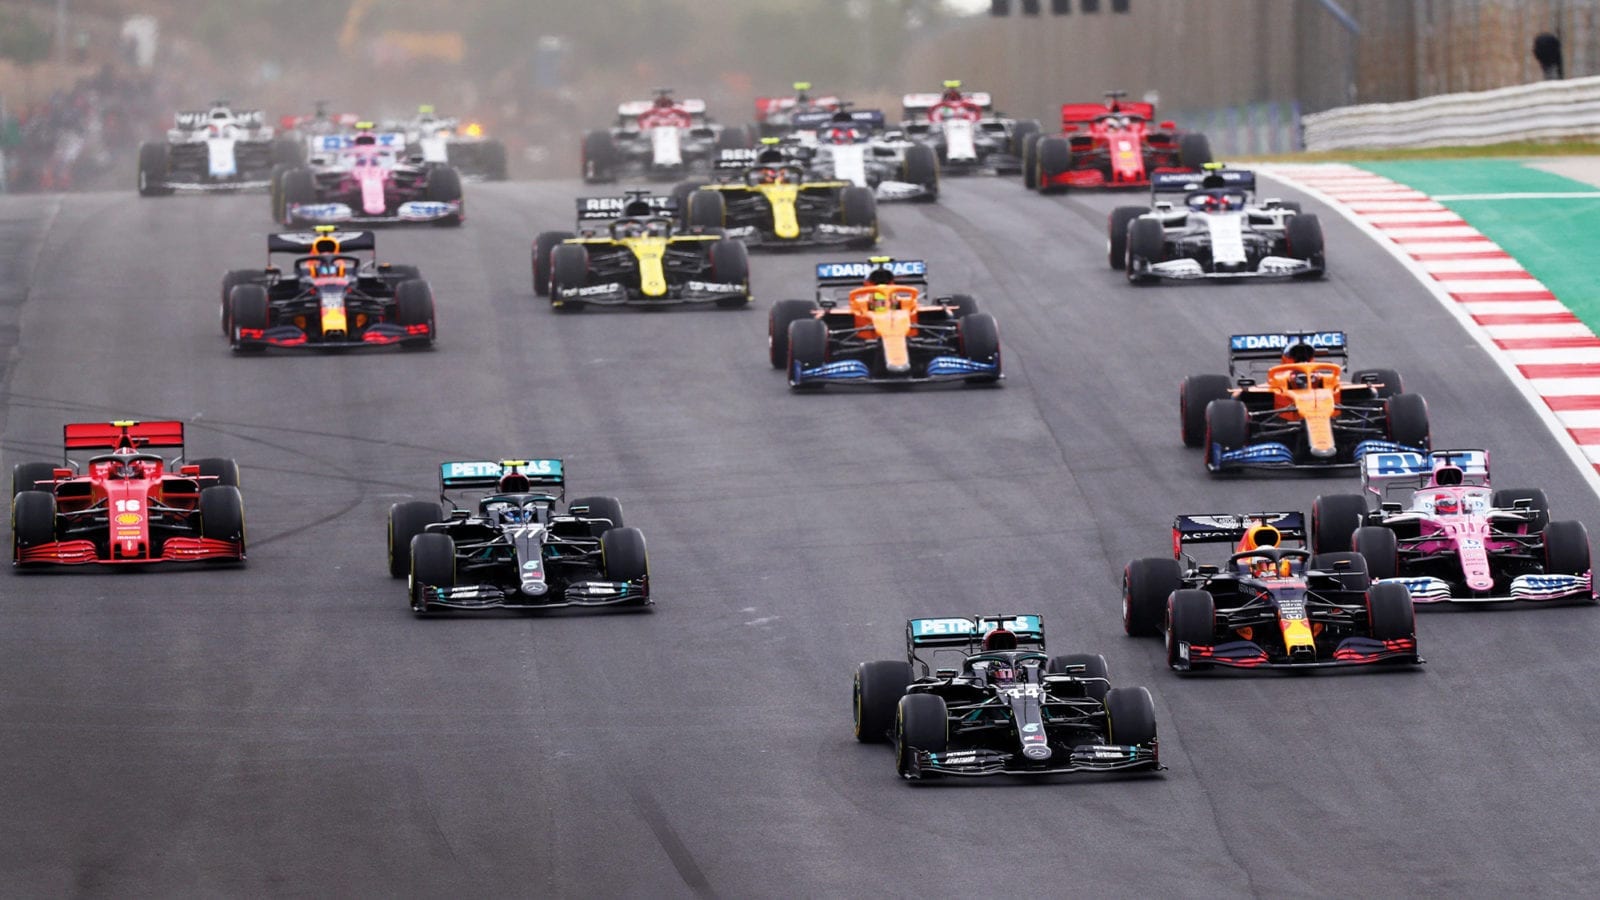 Start of the 2020 Portuguese Grand Prix at Portimao